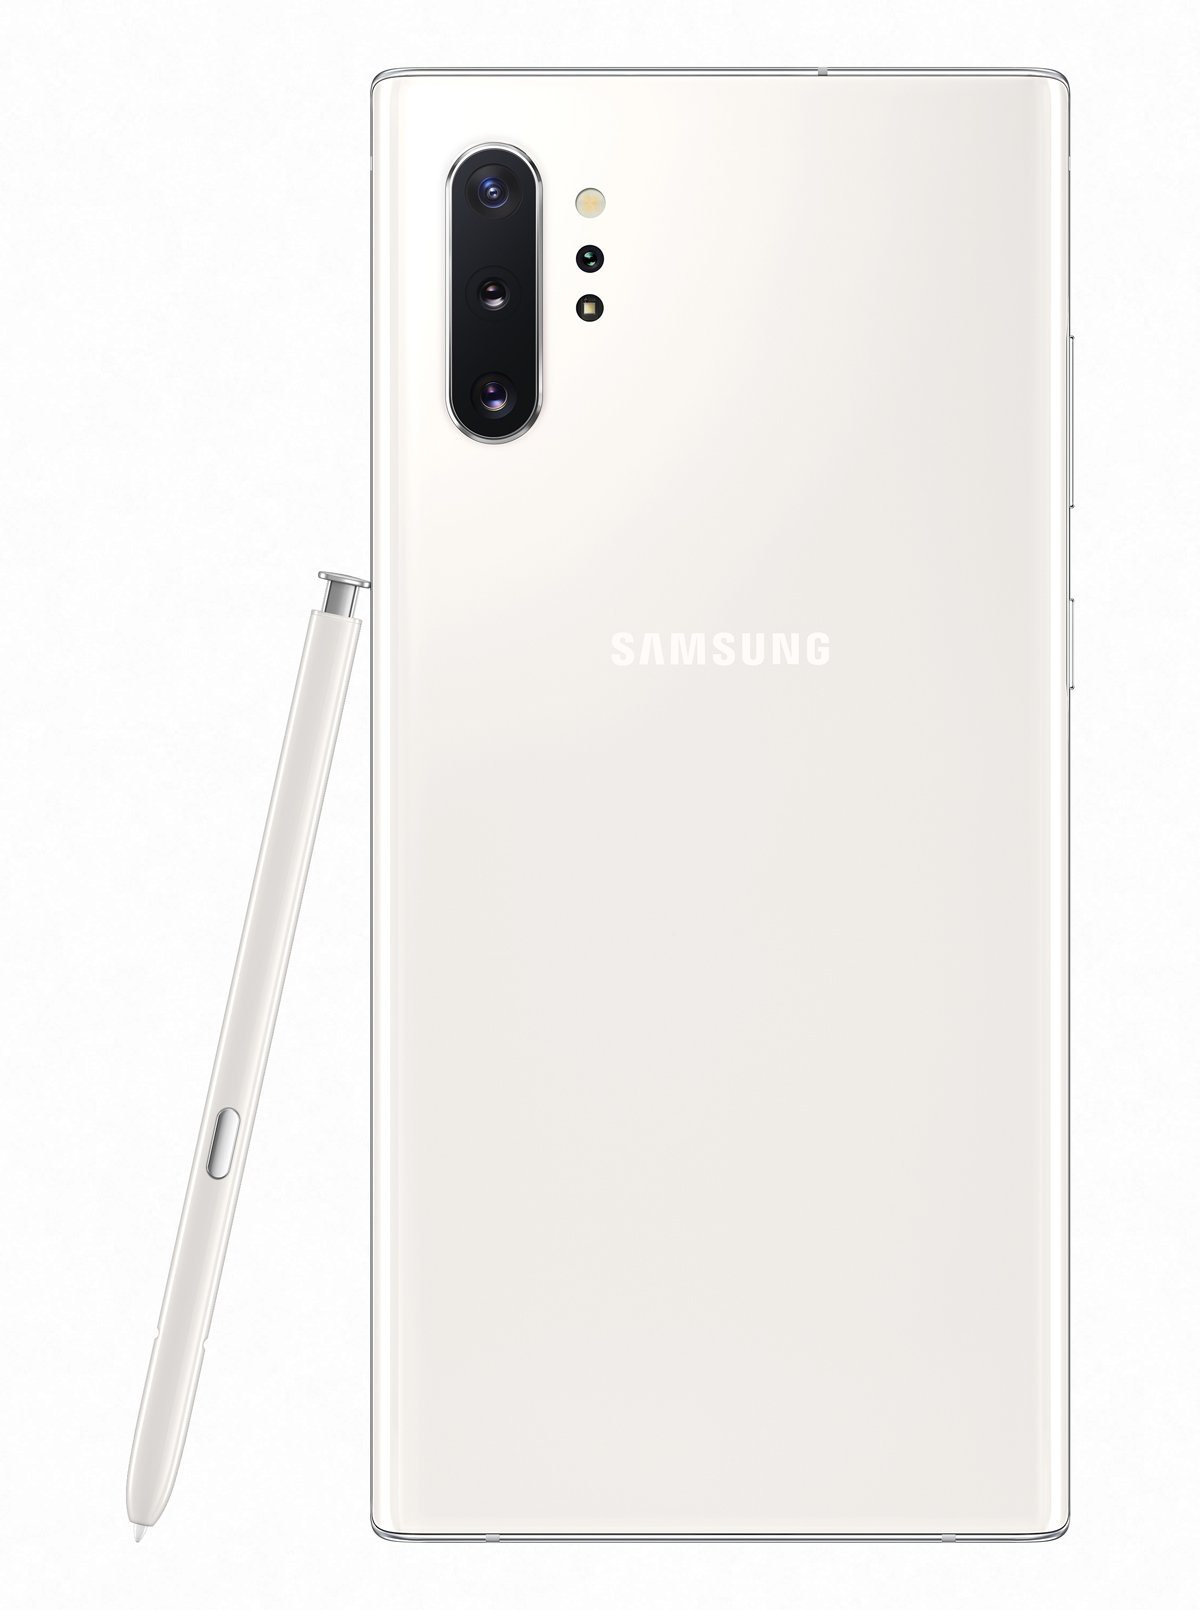 Samsung Galaxy Note 10+ Test